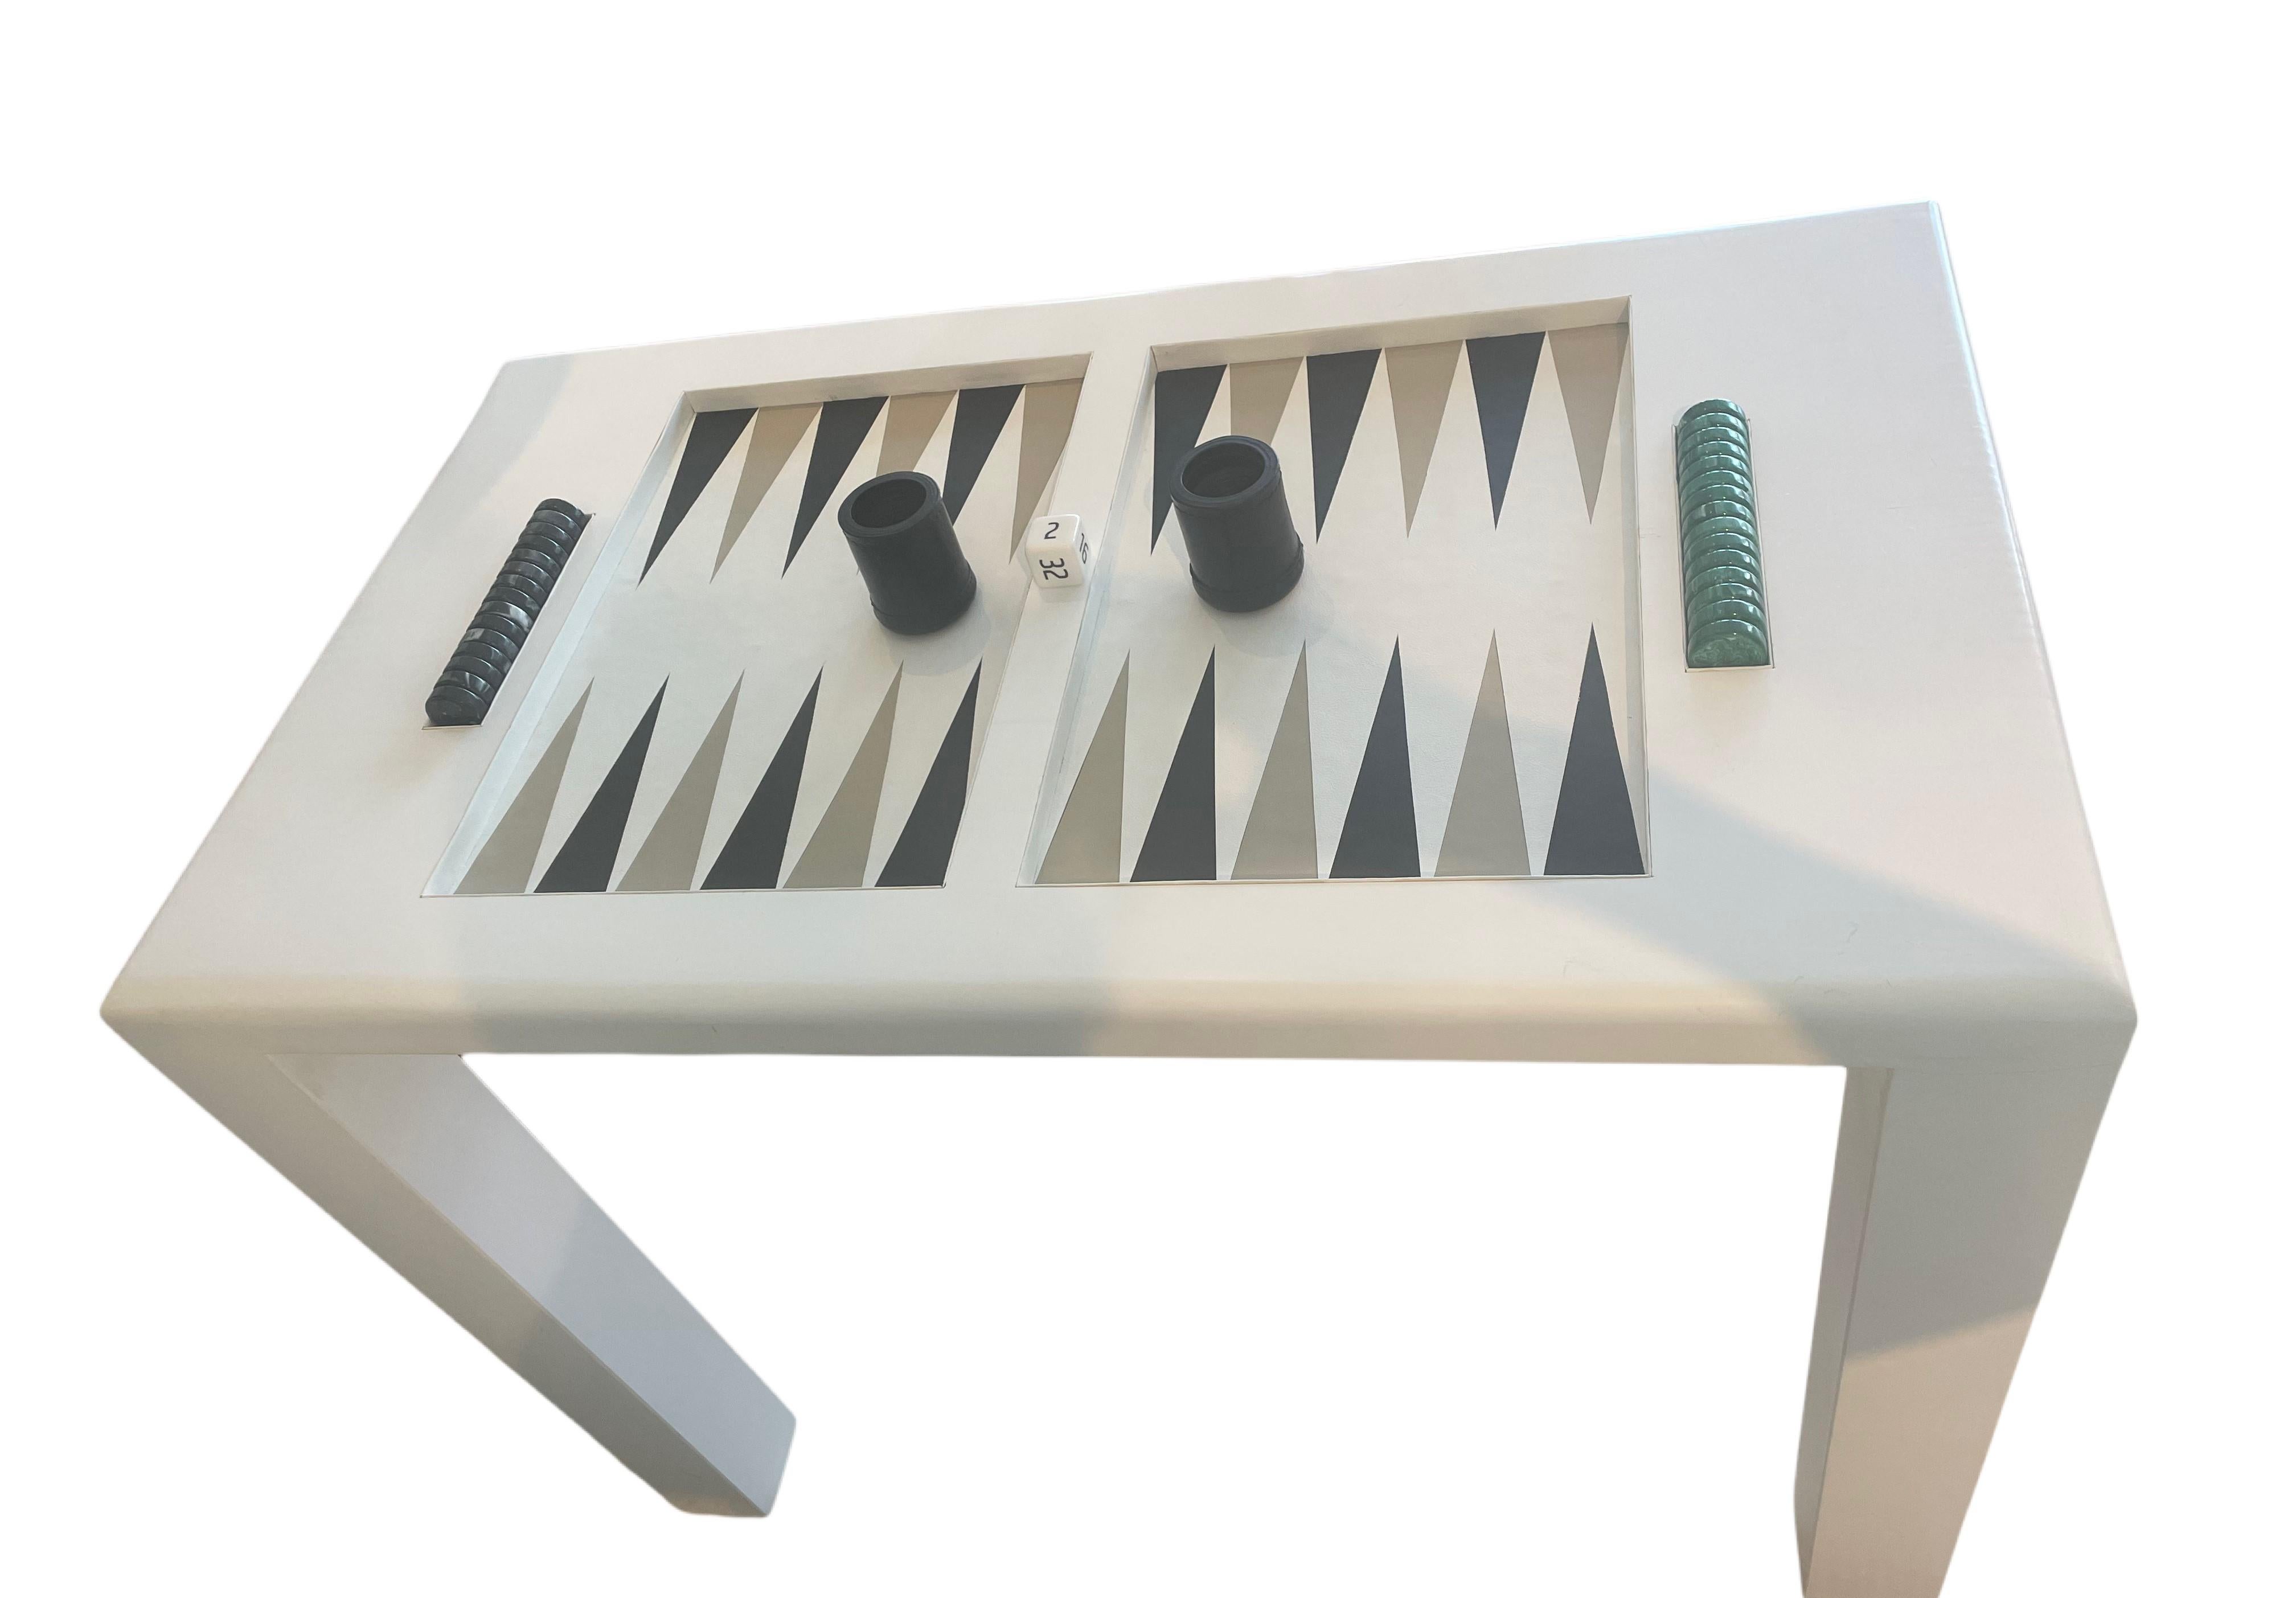 Cette table de backgammon en bois laqué est disponible ET un exemple de table qui peut être réalisée dans n'importe quelle taille ou combinaison de couleurs. Fabriquées à la main avec une attention particulière aux détails, ces tables de backgammon